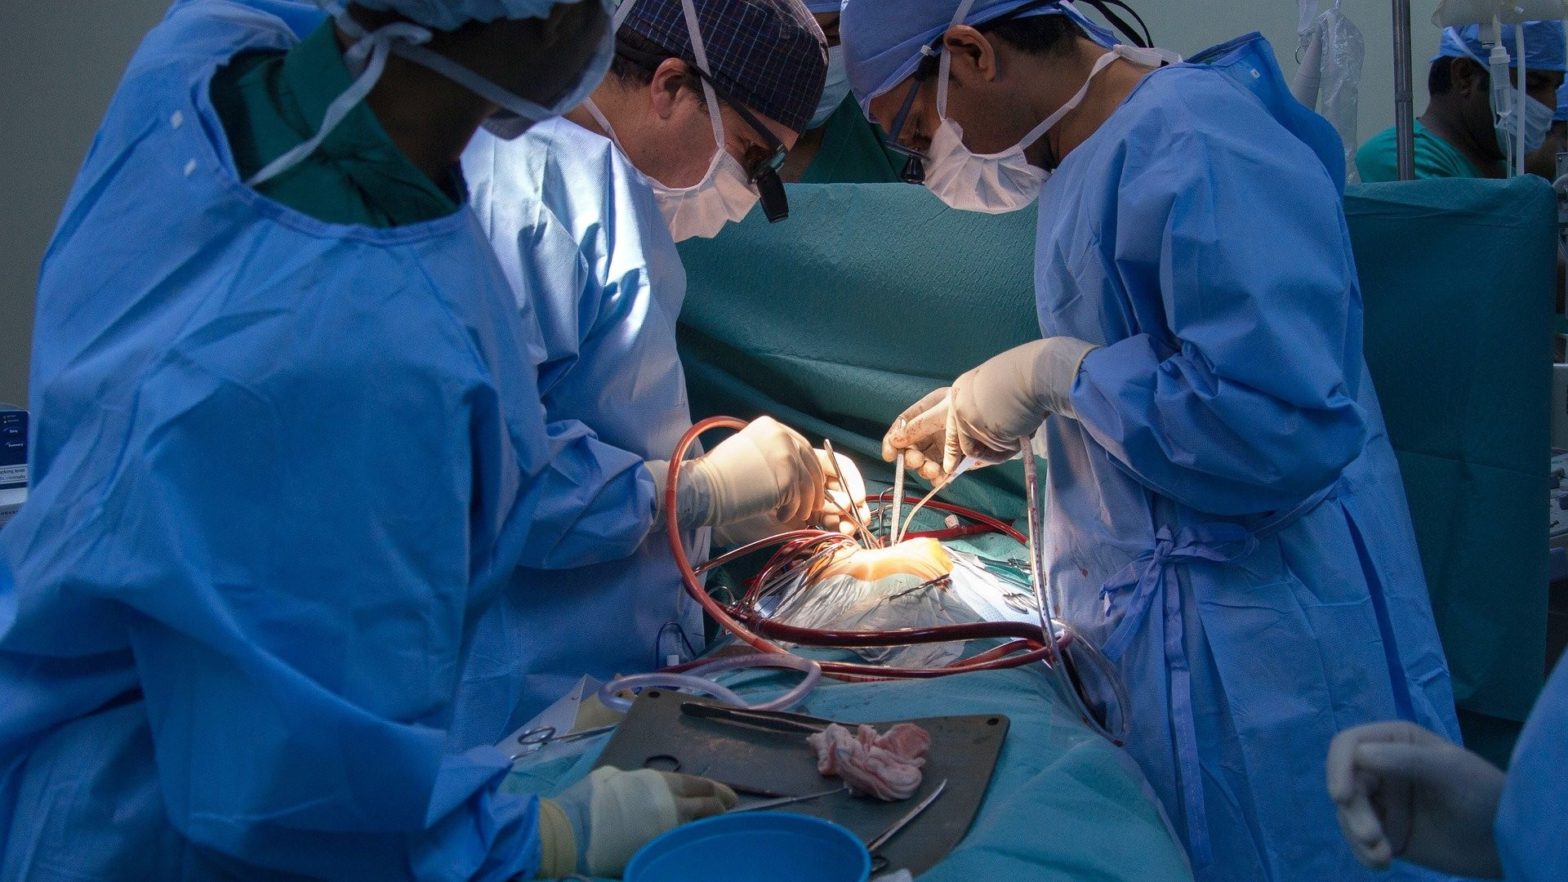 Equipe médica realizando uma cirugia bariátrica na sala de operações.